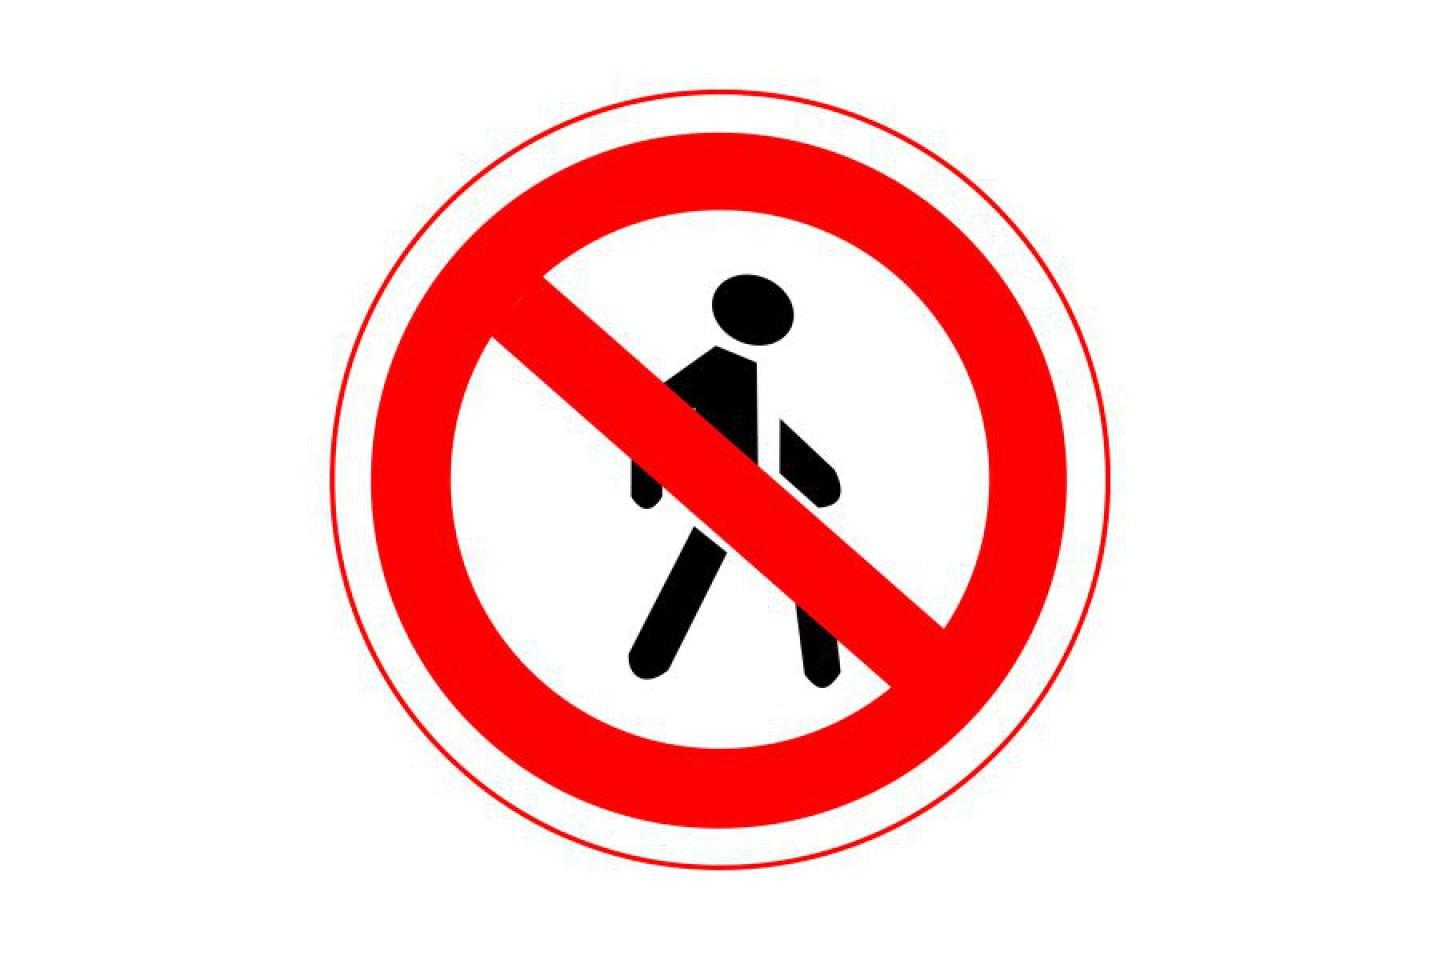 Вправо не ходить. 3.10 Движение пешеходов запрещено. Знак дорожный, 3.10 «движение пешеходов запрещено»с желтой окантовкой. Запрещающие знаки. Знак ходить запрещено.